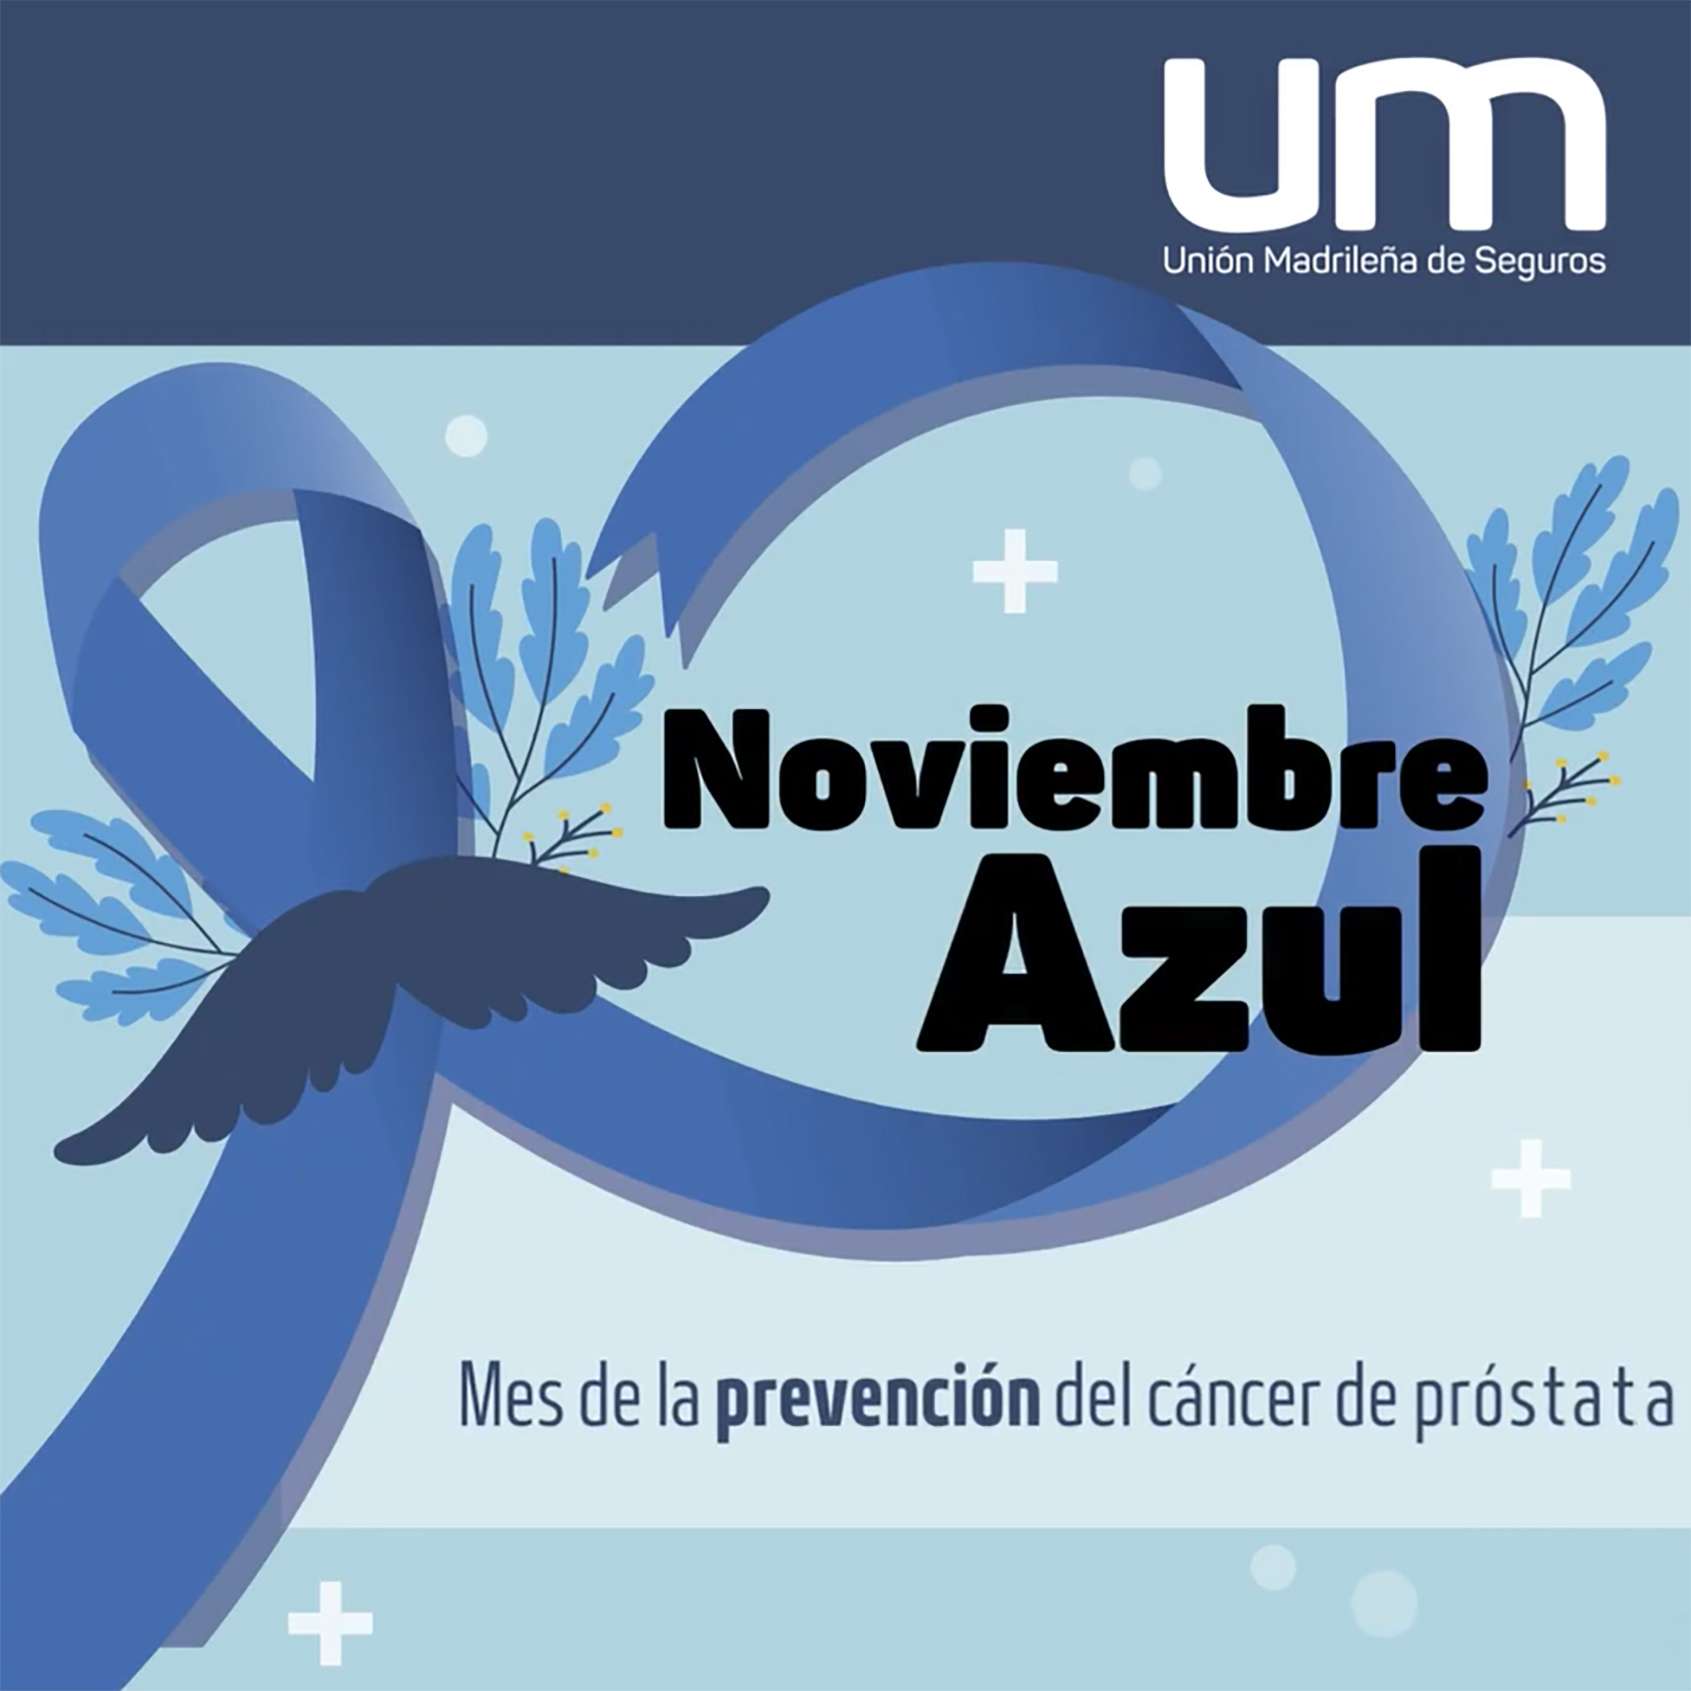 Noviembre Azul - Mes de la prevención del cáncer de próstata